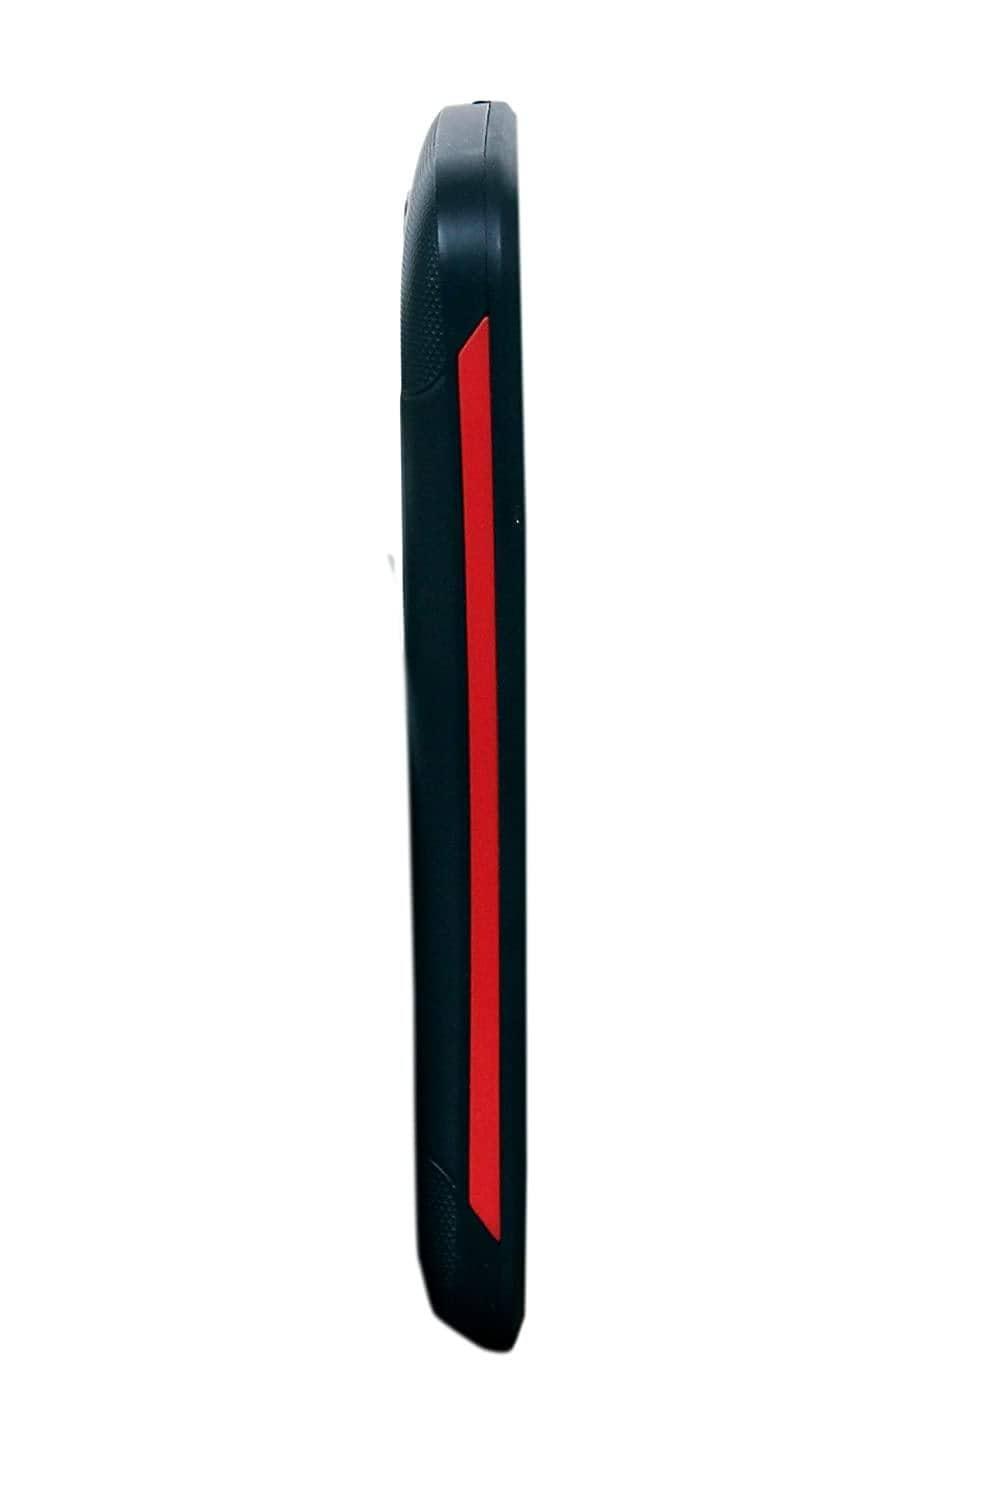 Karbonn K106S (Black-Red)-Mobile Phones-dealsplant